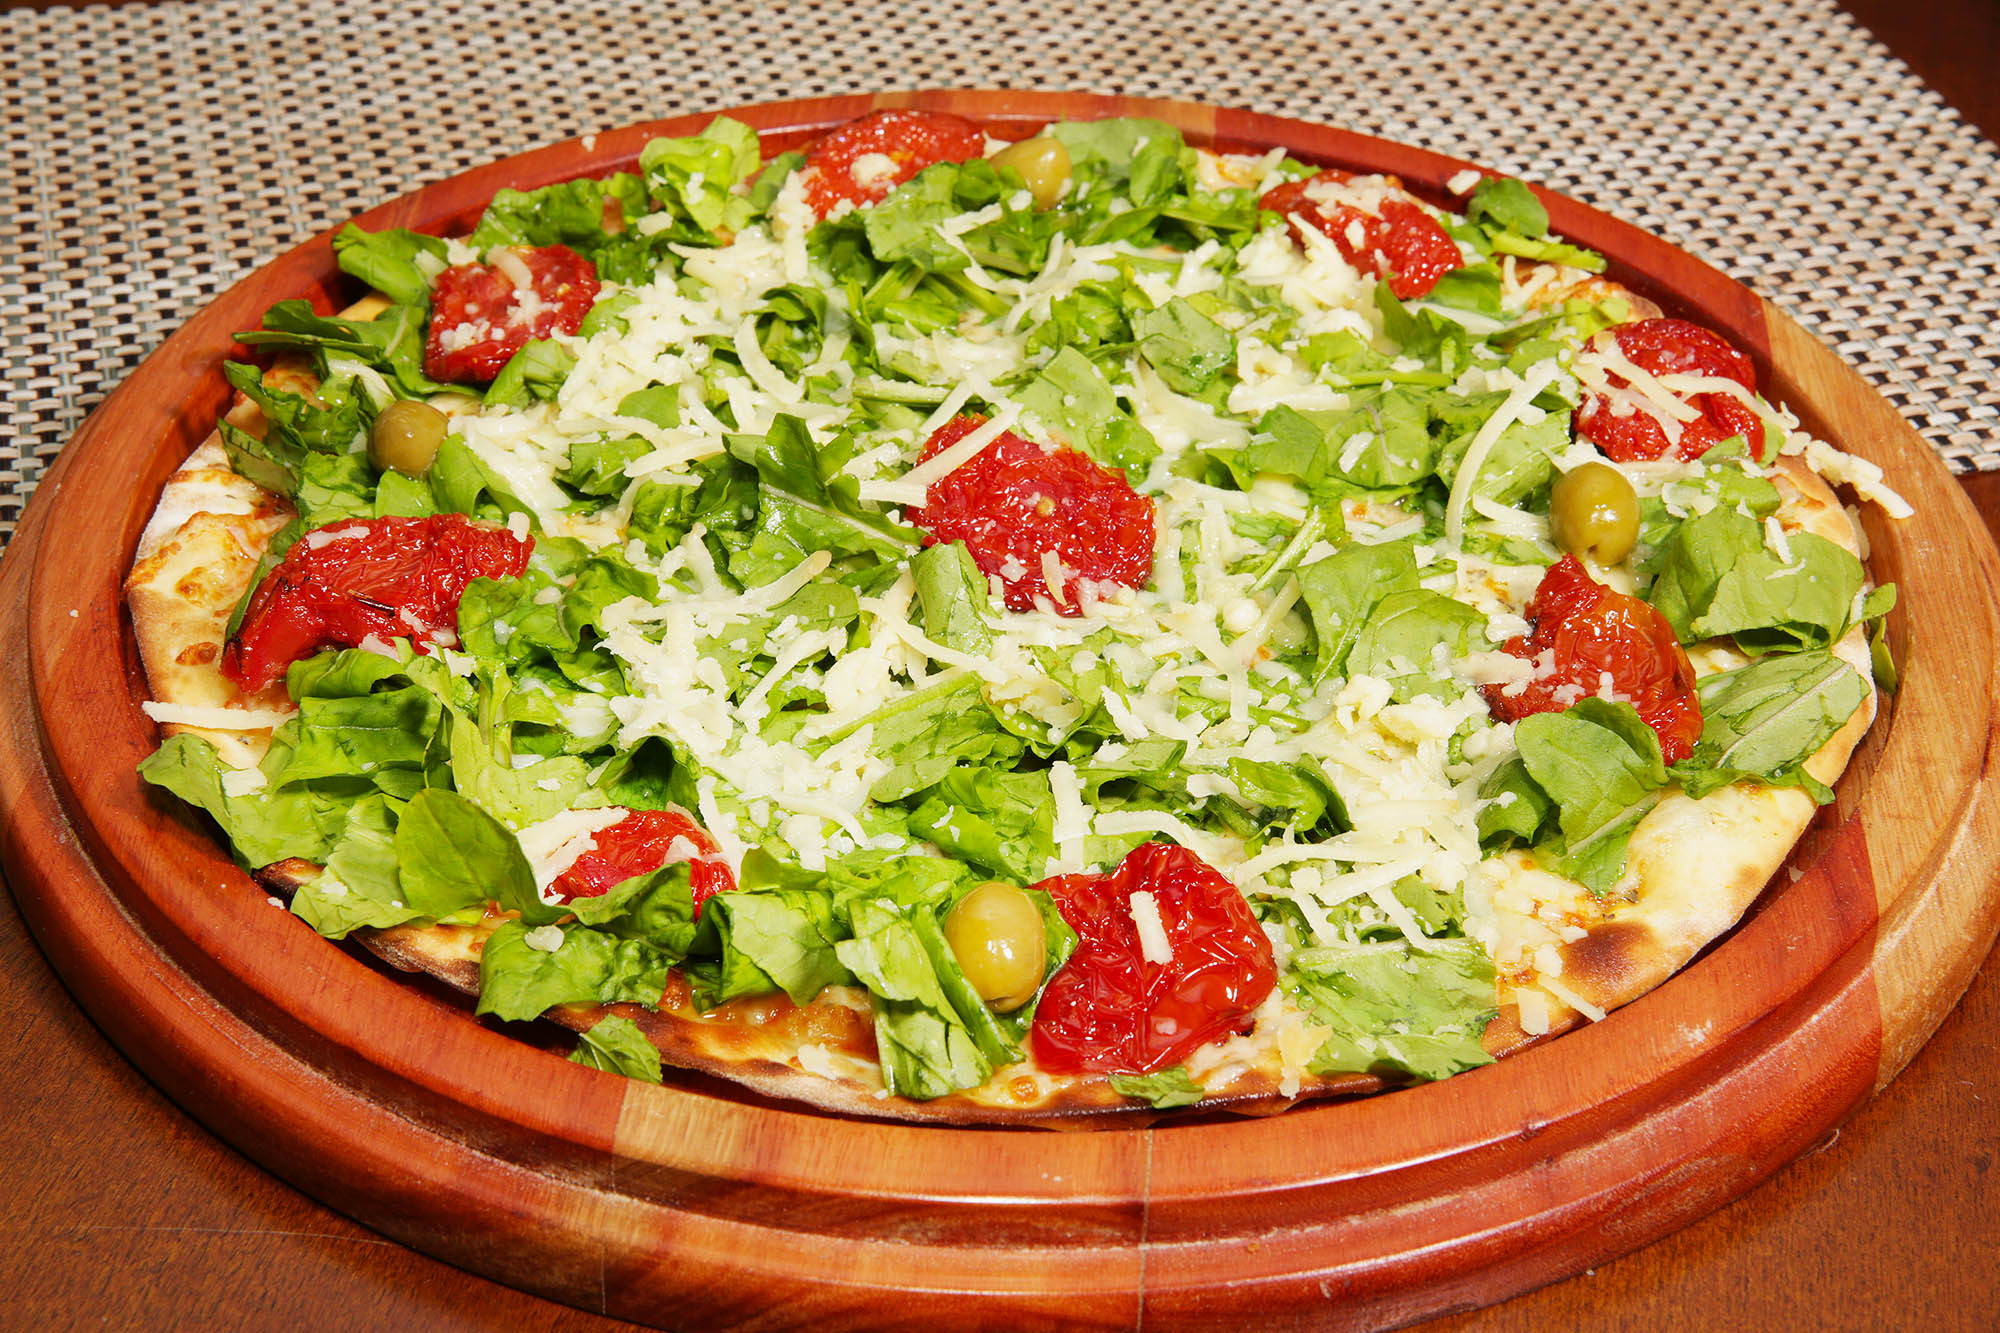 Oxente tem promoção de pizza no delivery 6 dias por semana - Revista Deguste